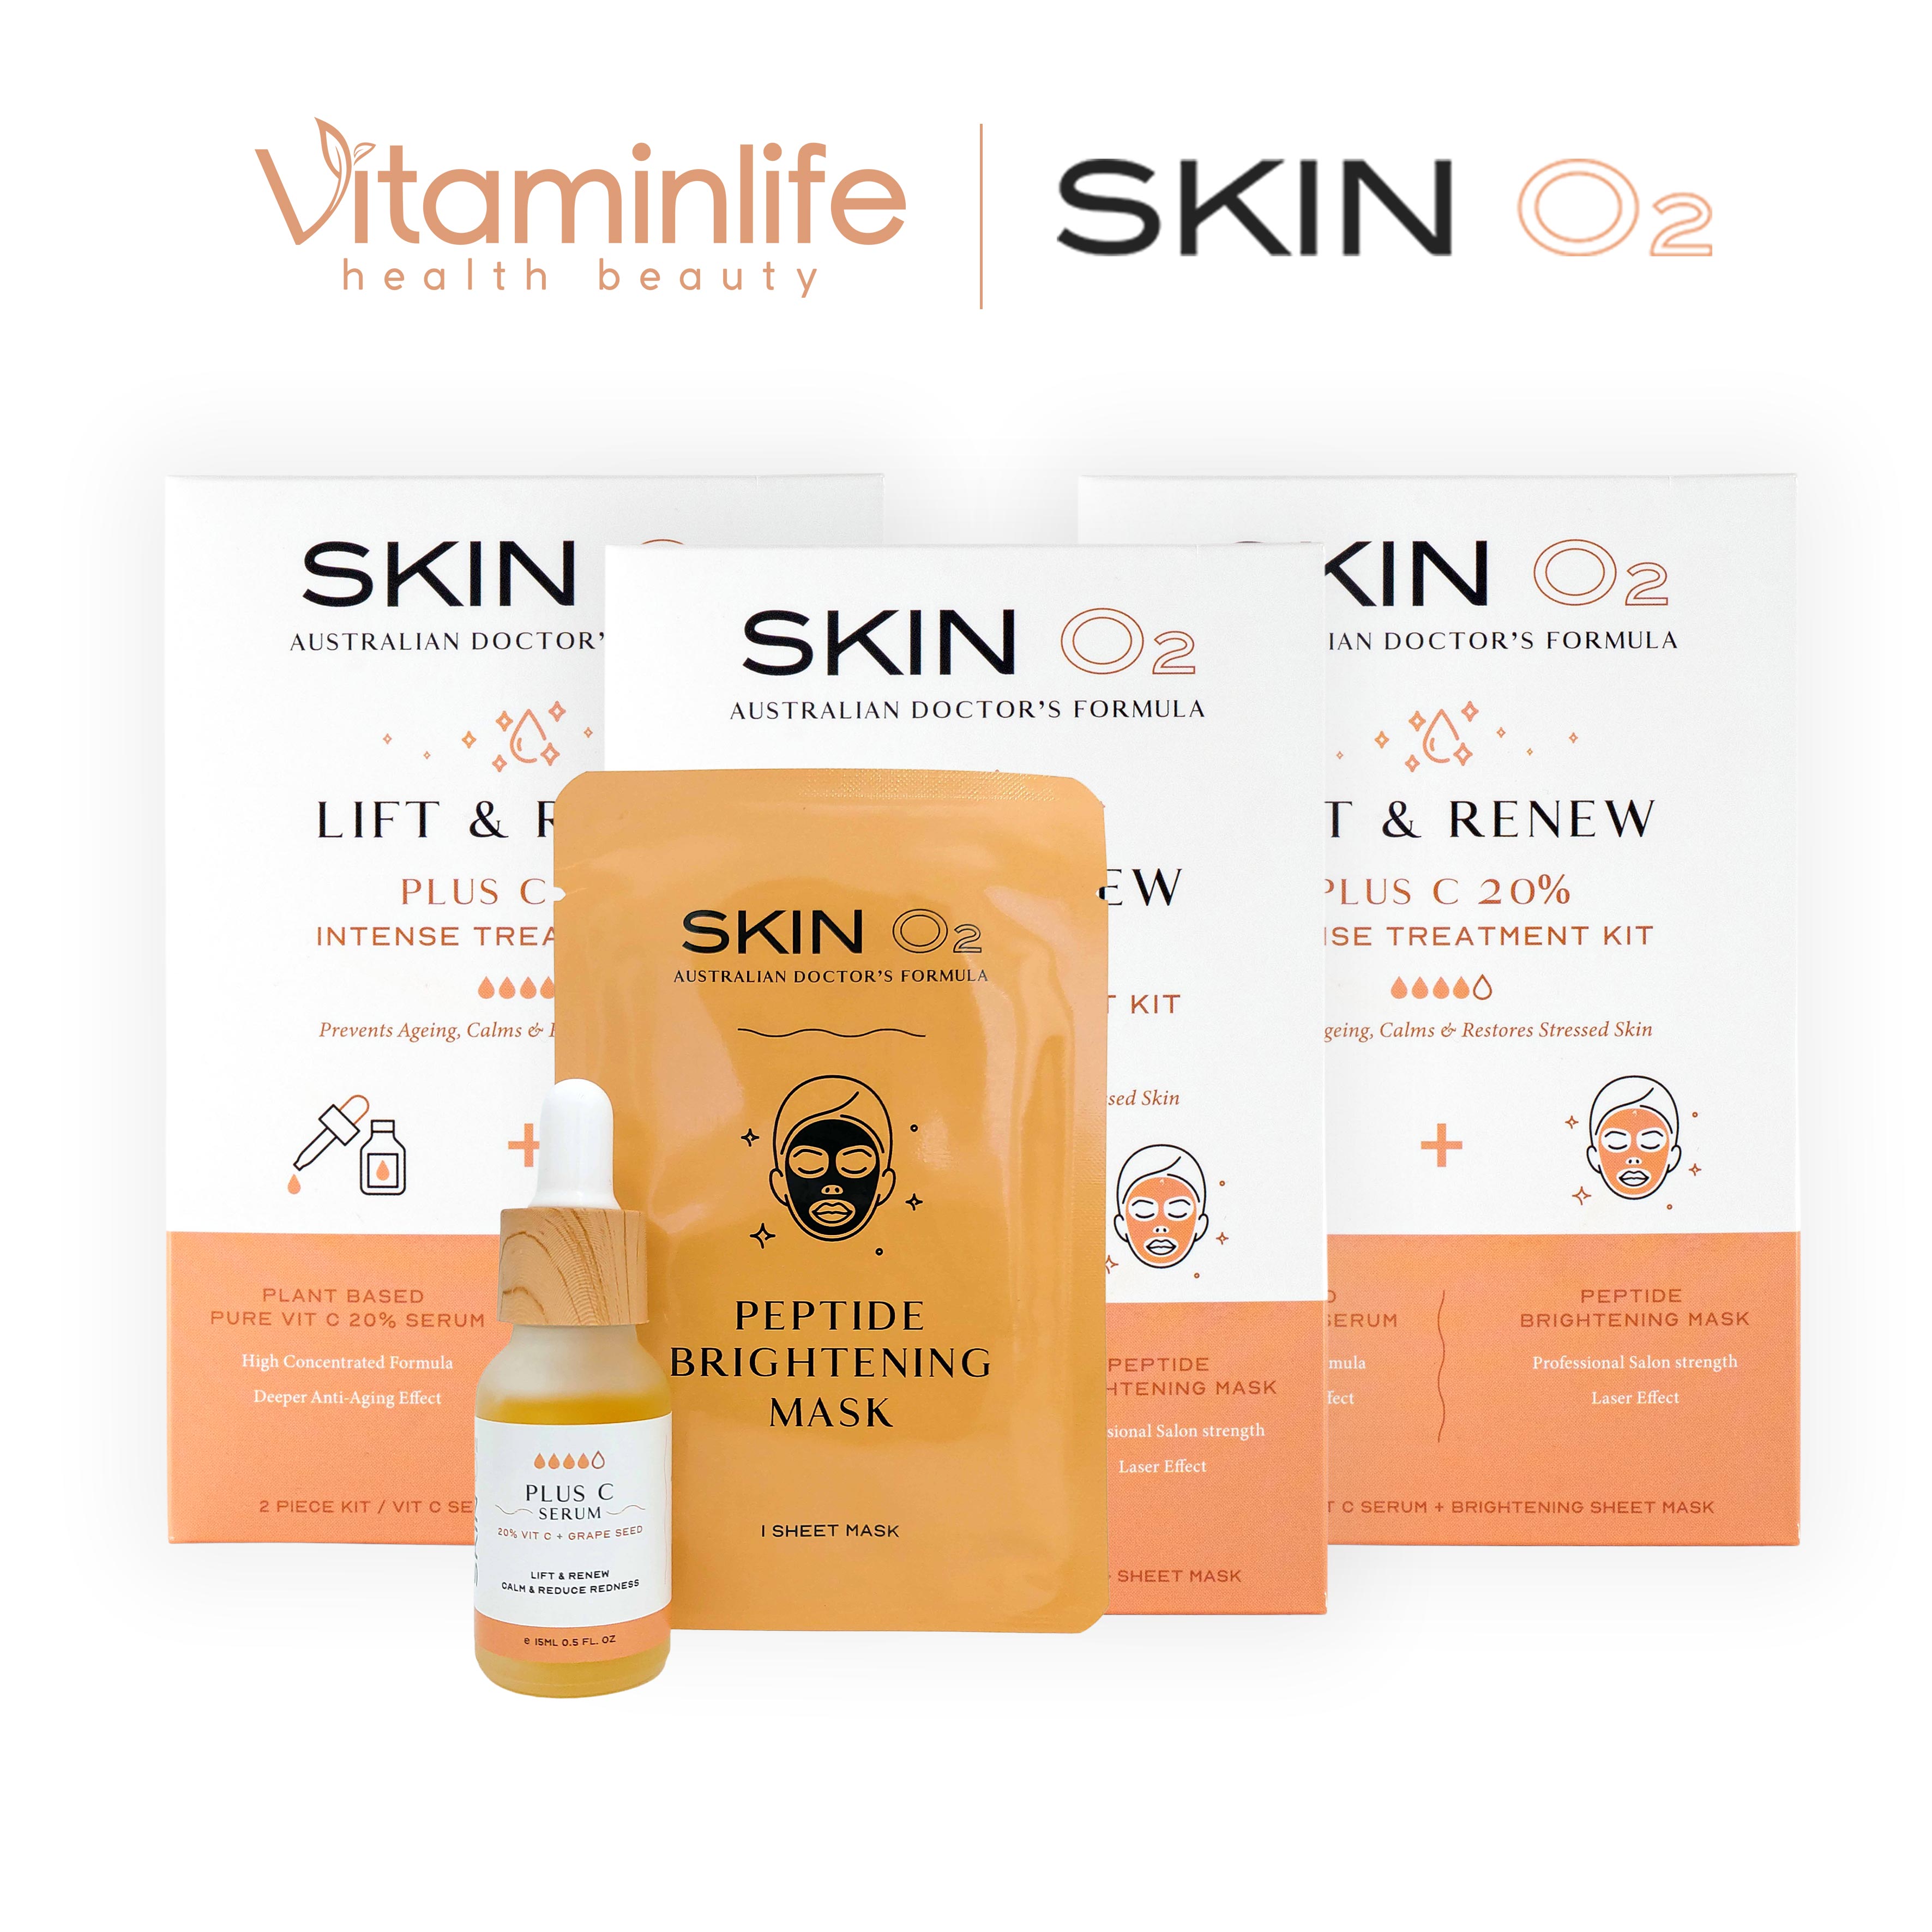 Bộ kit serum tăng cường Vitamin C Skin O2